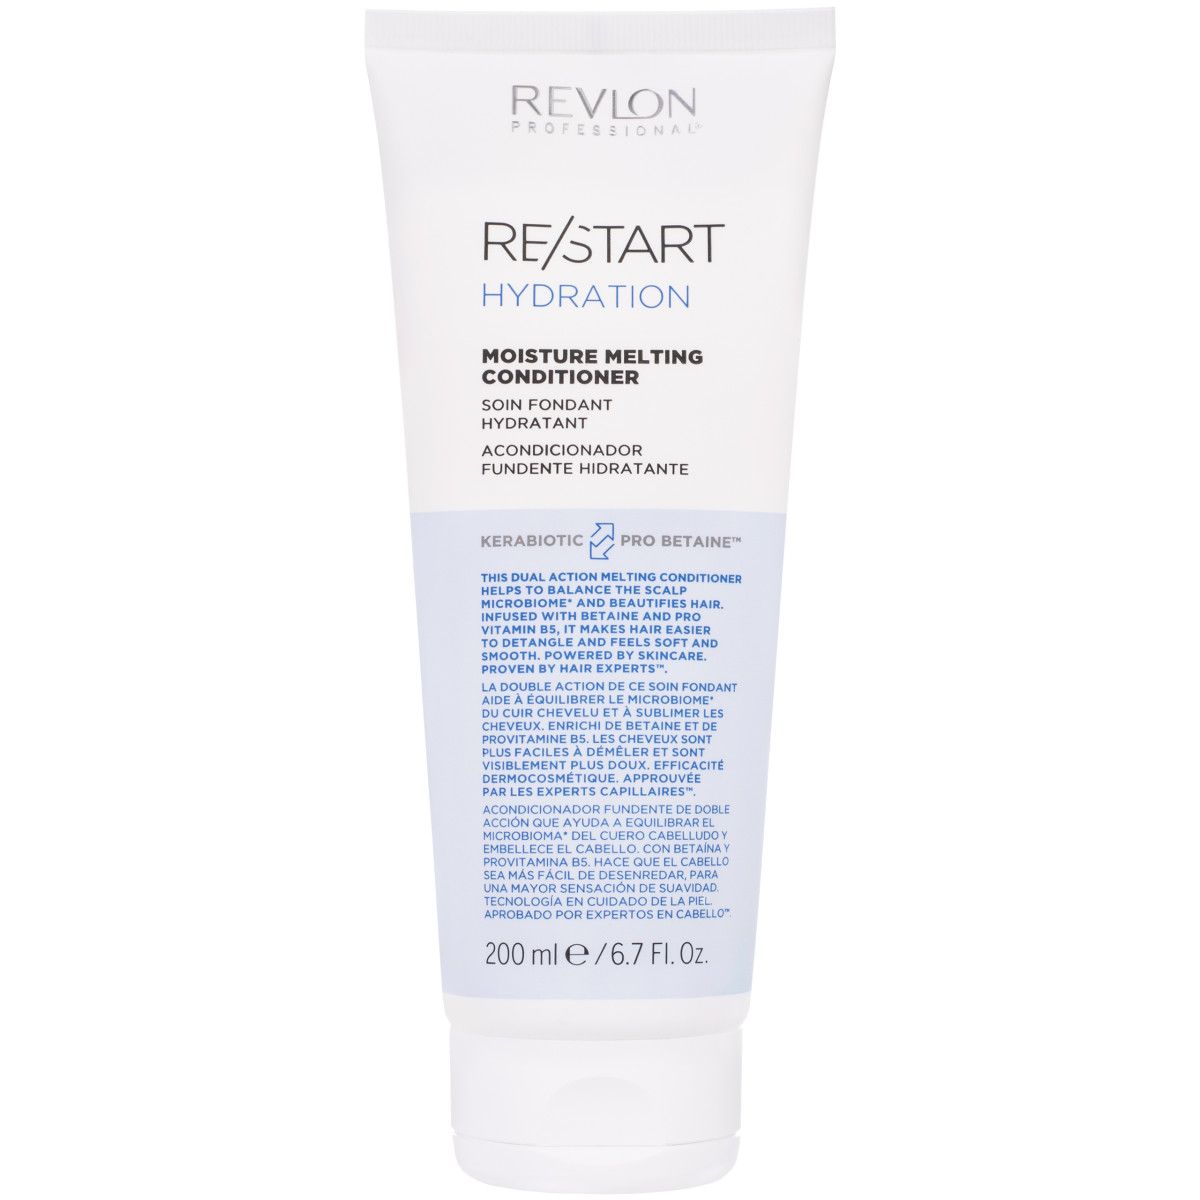 50ml RE/START serum do Hydration Revlon nawilżające włosów Anti-Frizz